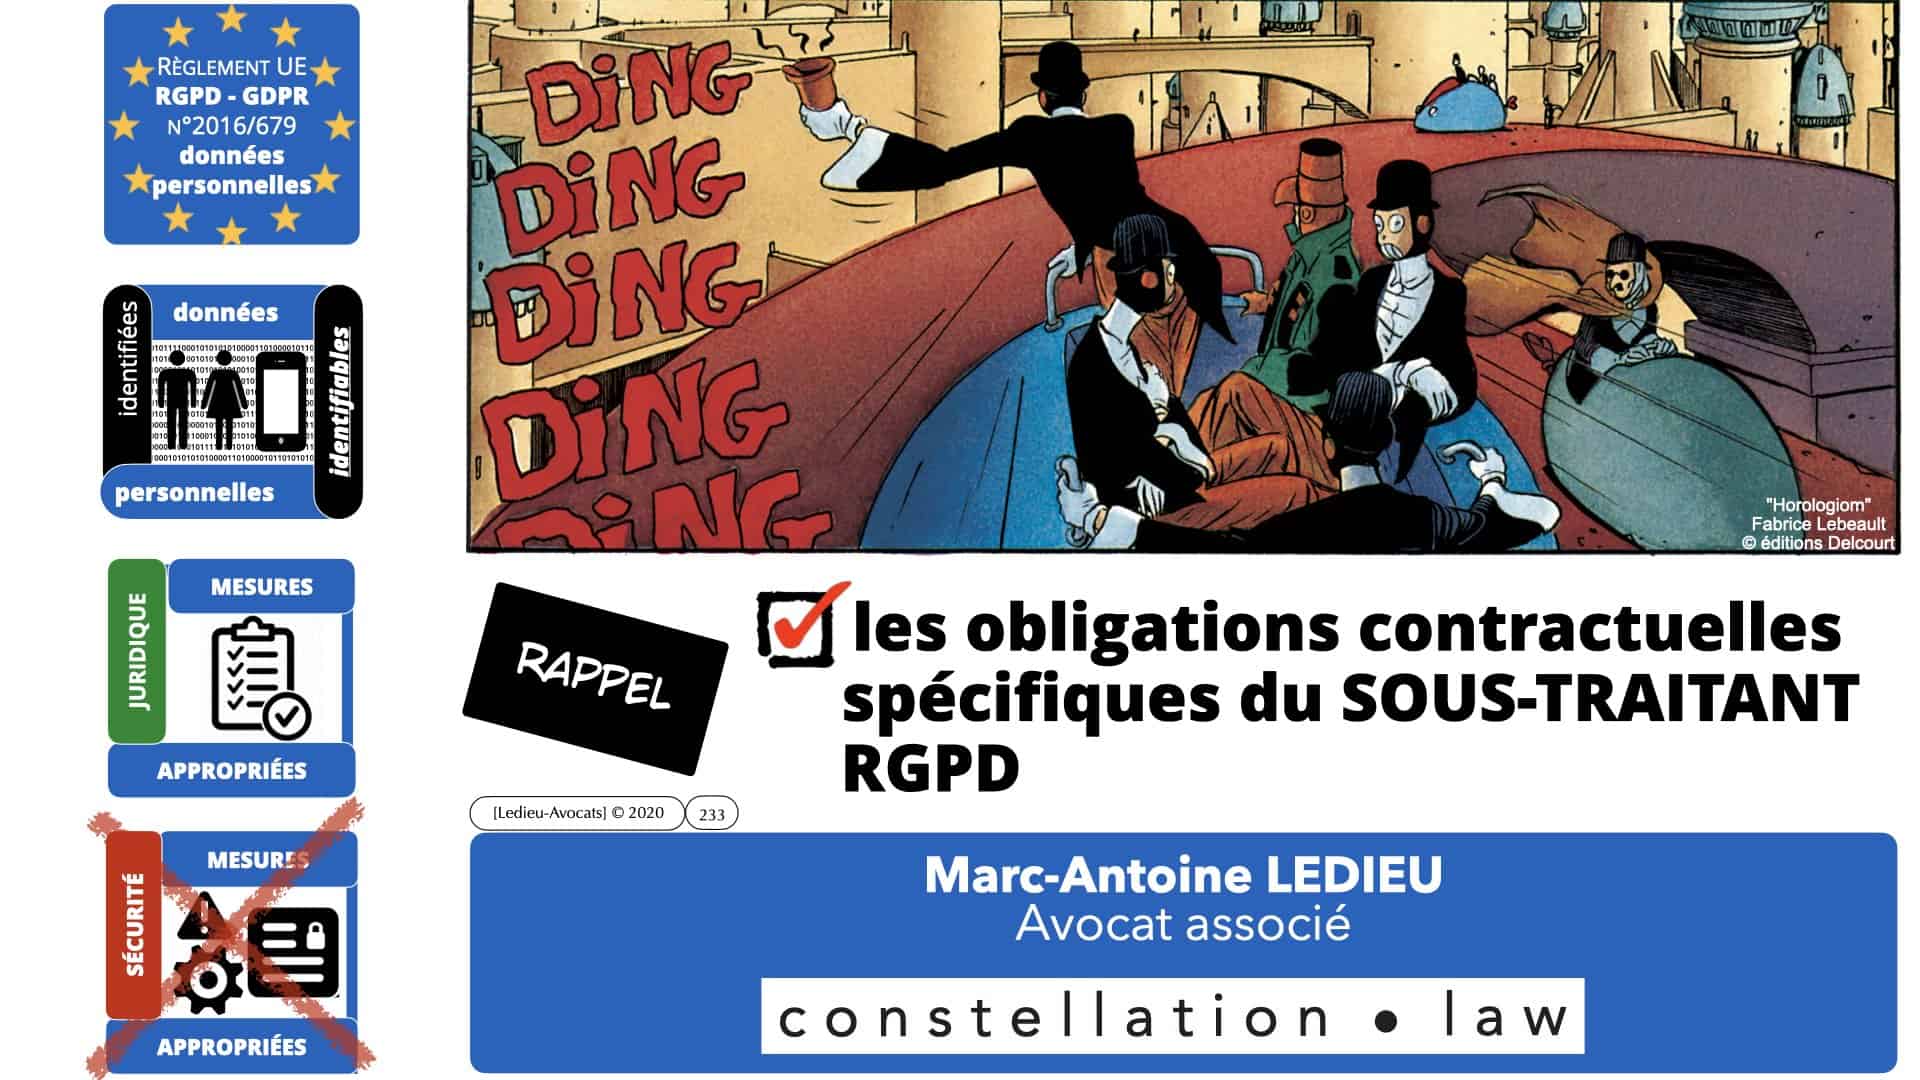 RGPD e-Privacy données personnelles jurisprudence formation Lamy Les Echos 10-02-2021 ©Ledieu-Avocats.233